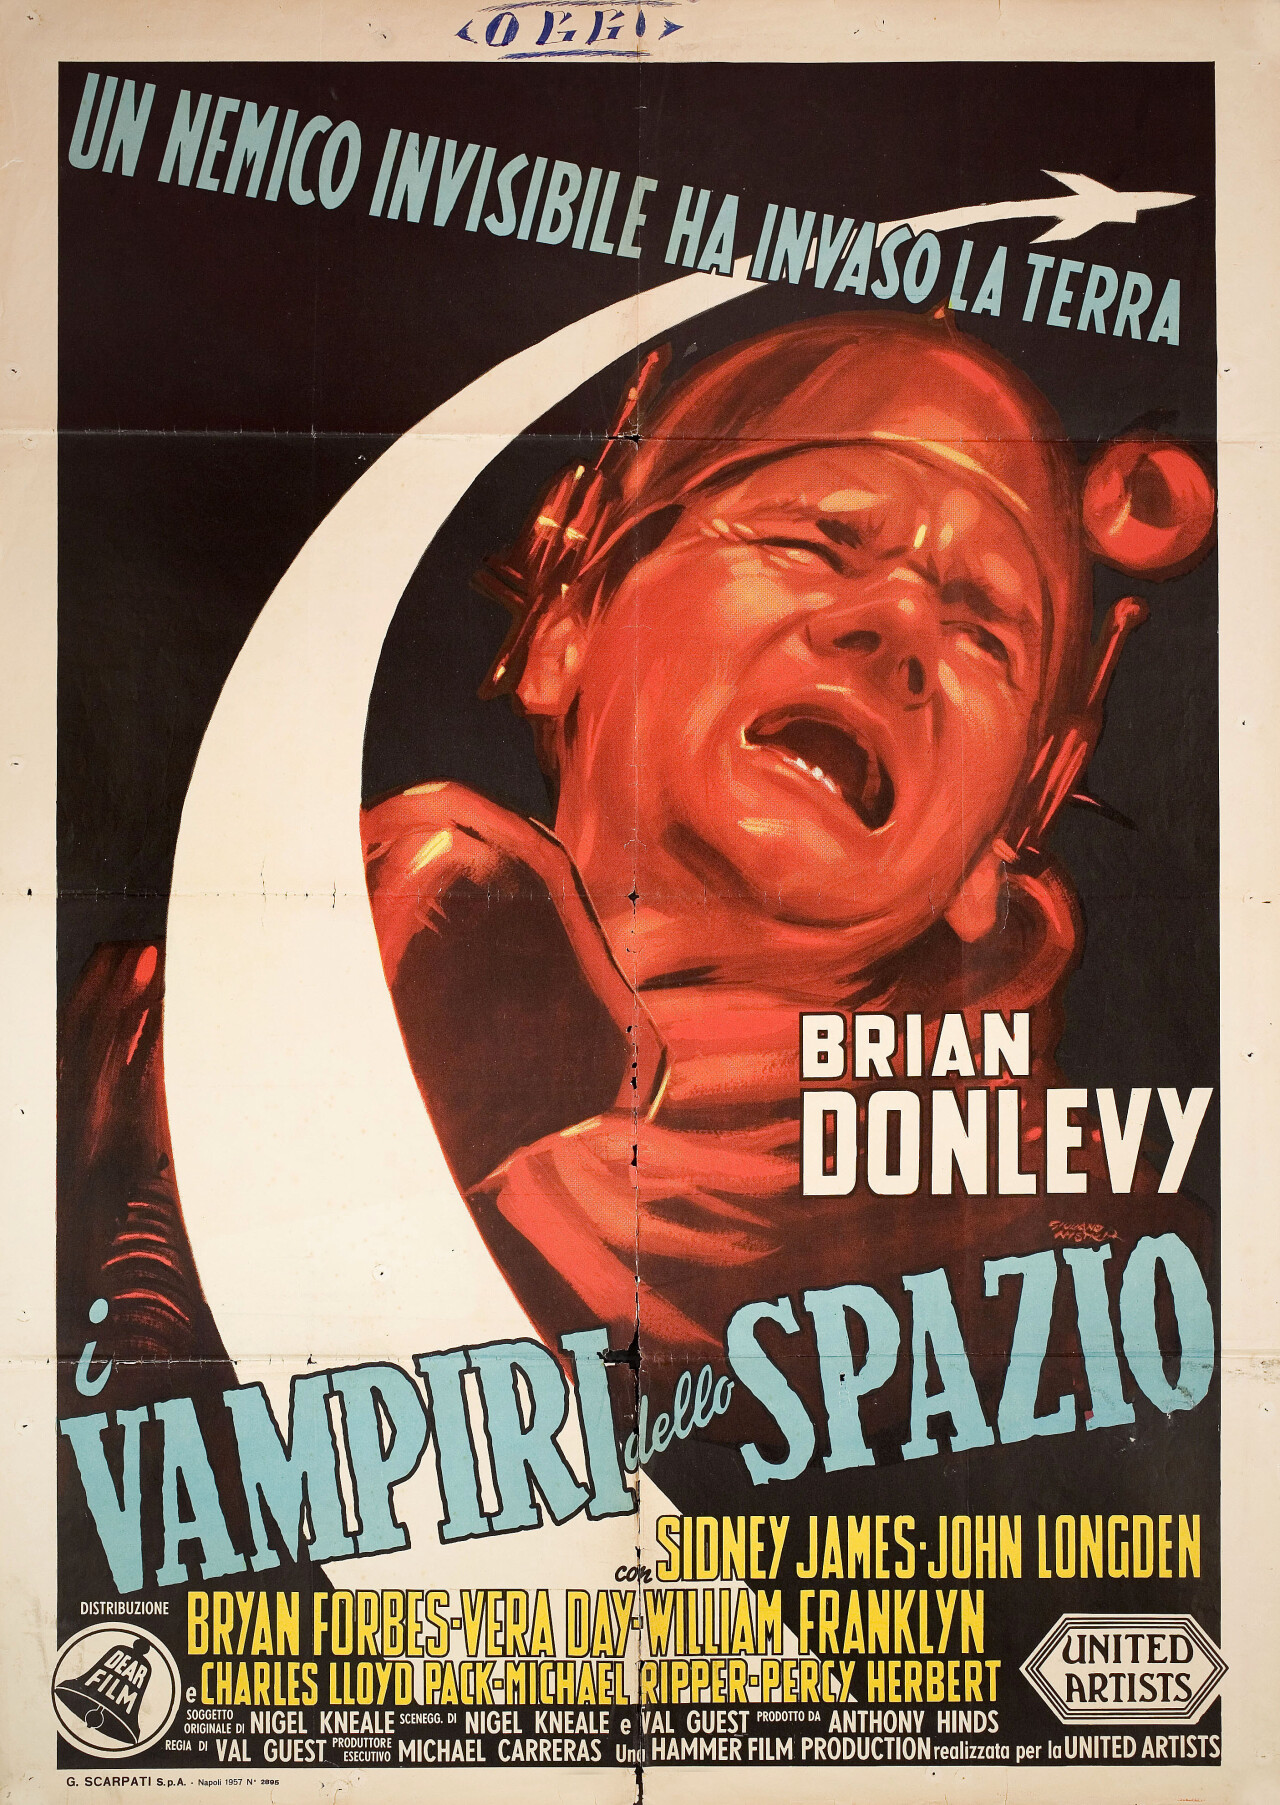 Враг из космоса (Enemy from Space, 1957), режиссёр Вал Гест, итальянский постер к фильму, автор Джулиано Нистри (Hummer horror, 1957 год)